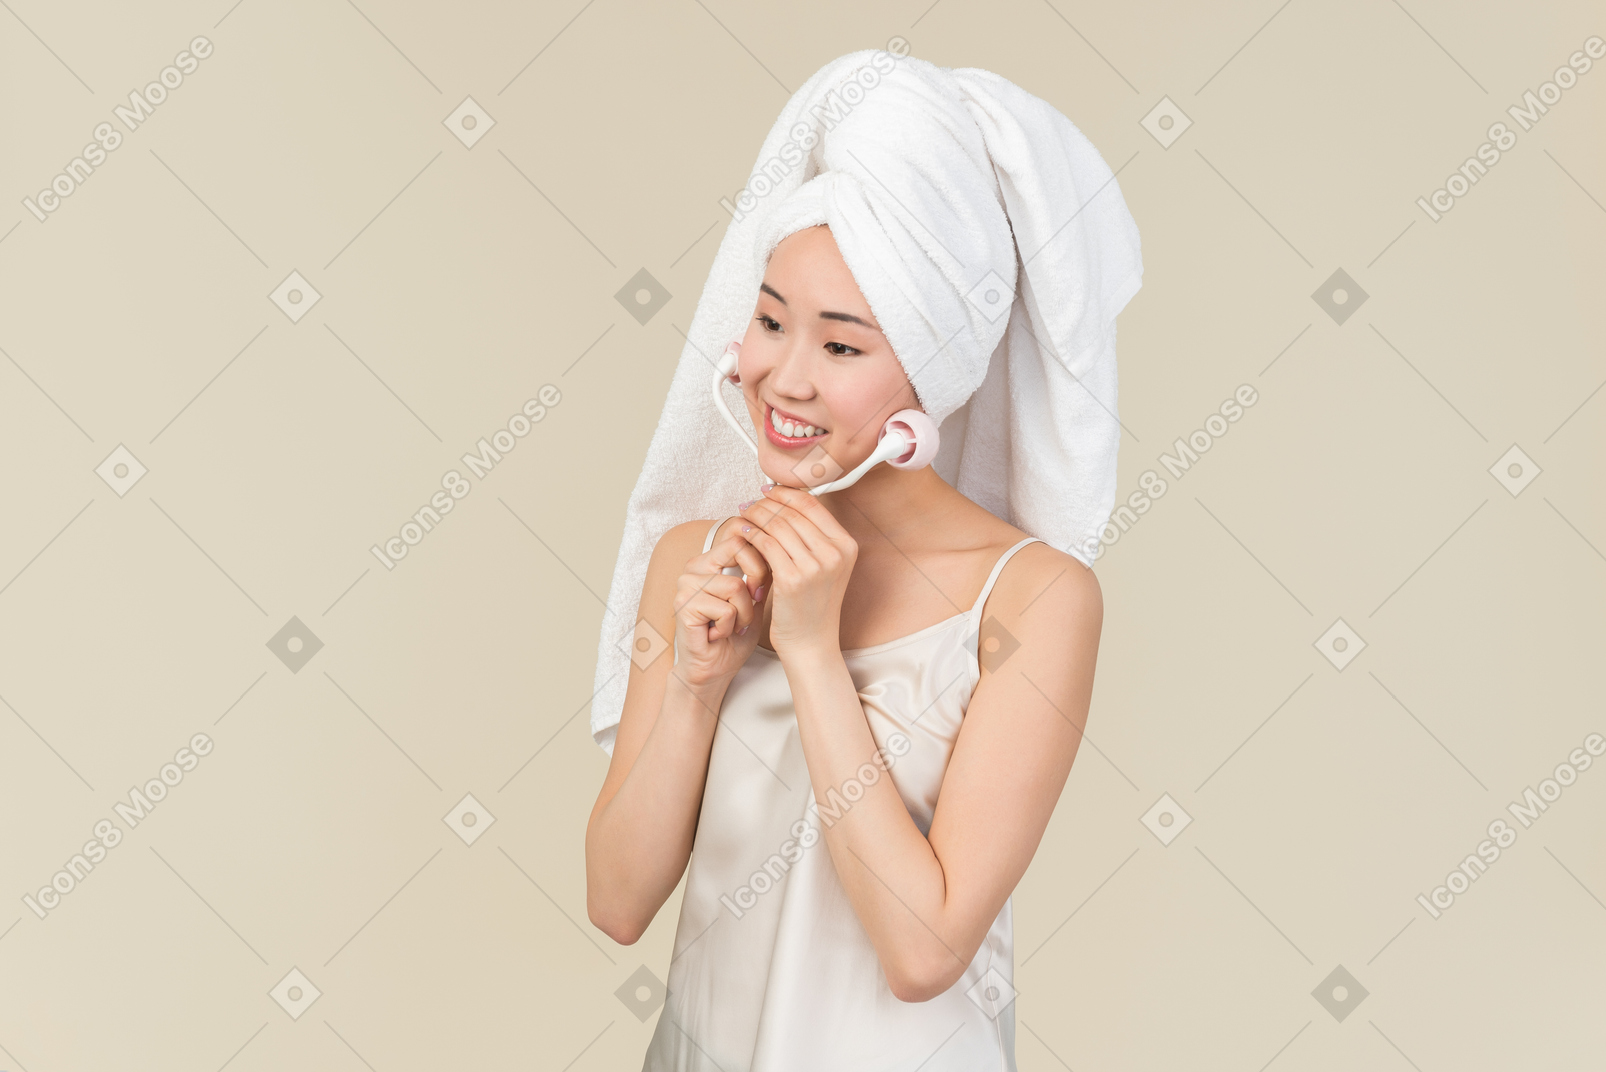 Молодая азиатская женщина с волосами, завернутыми в полотенце, делает массаж лица